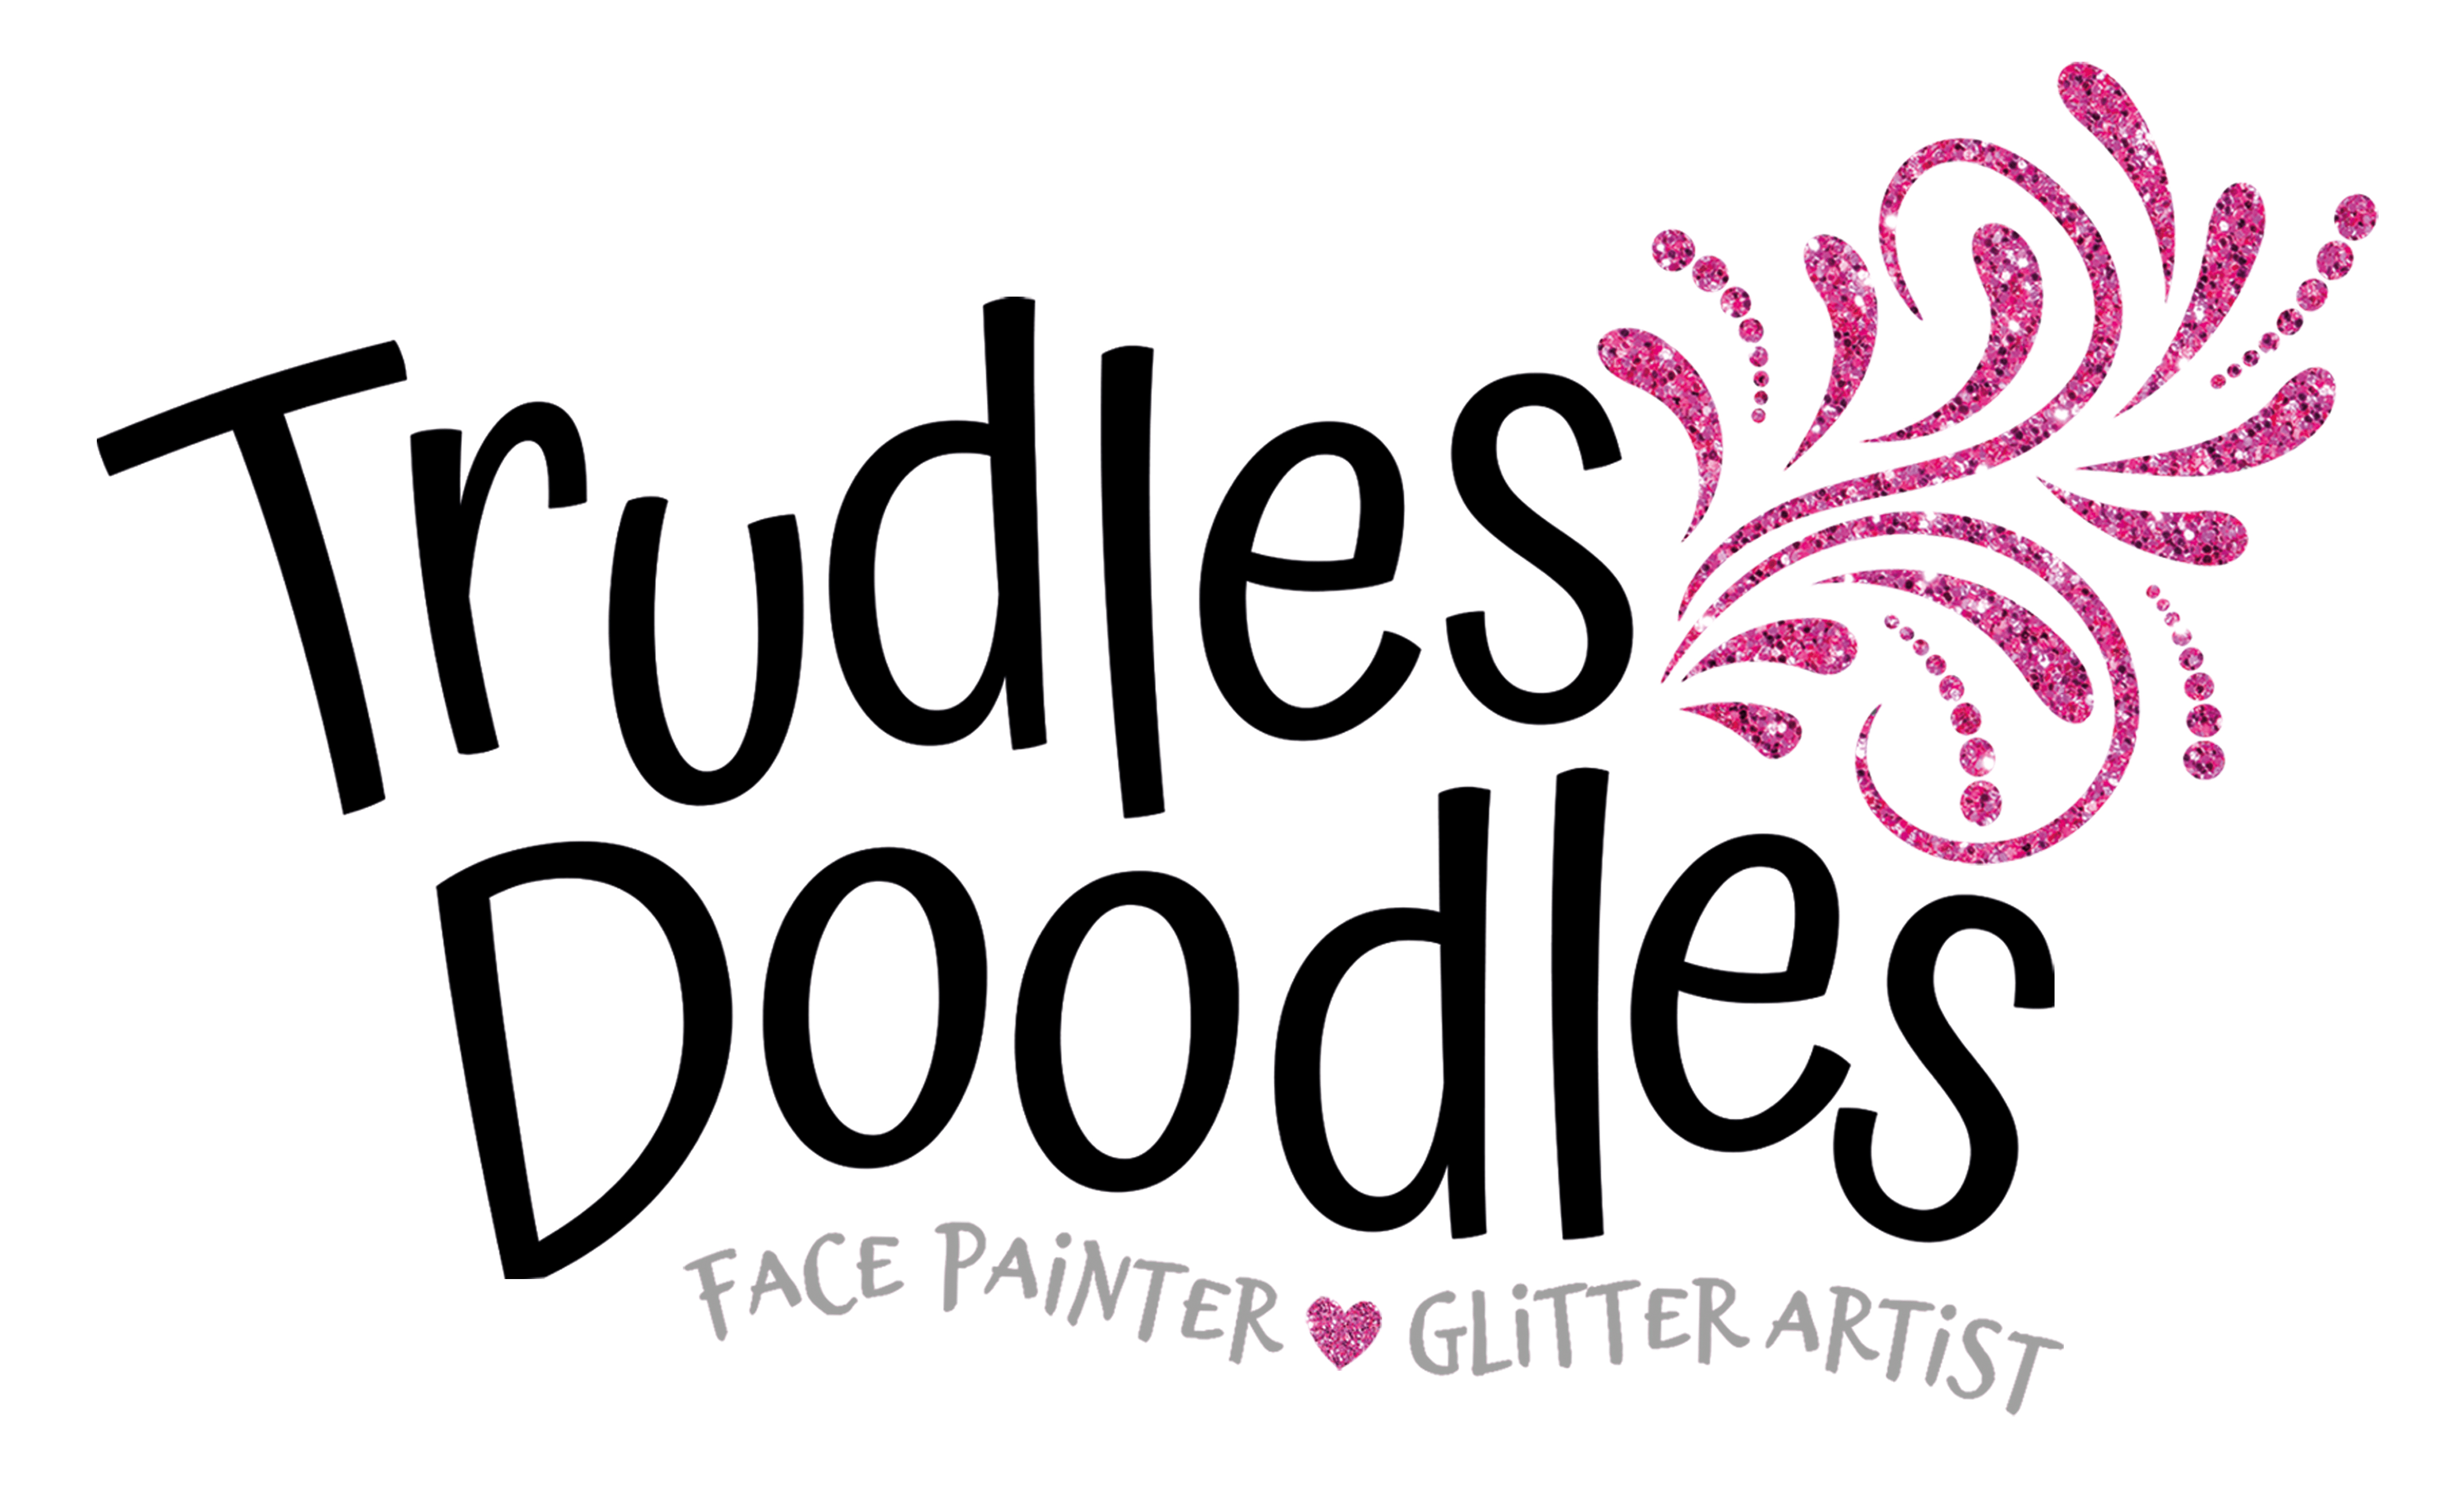 Trudles Doodles Face painter